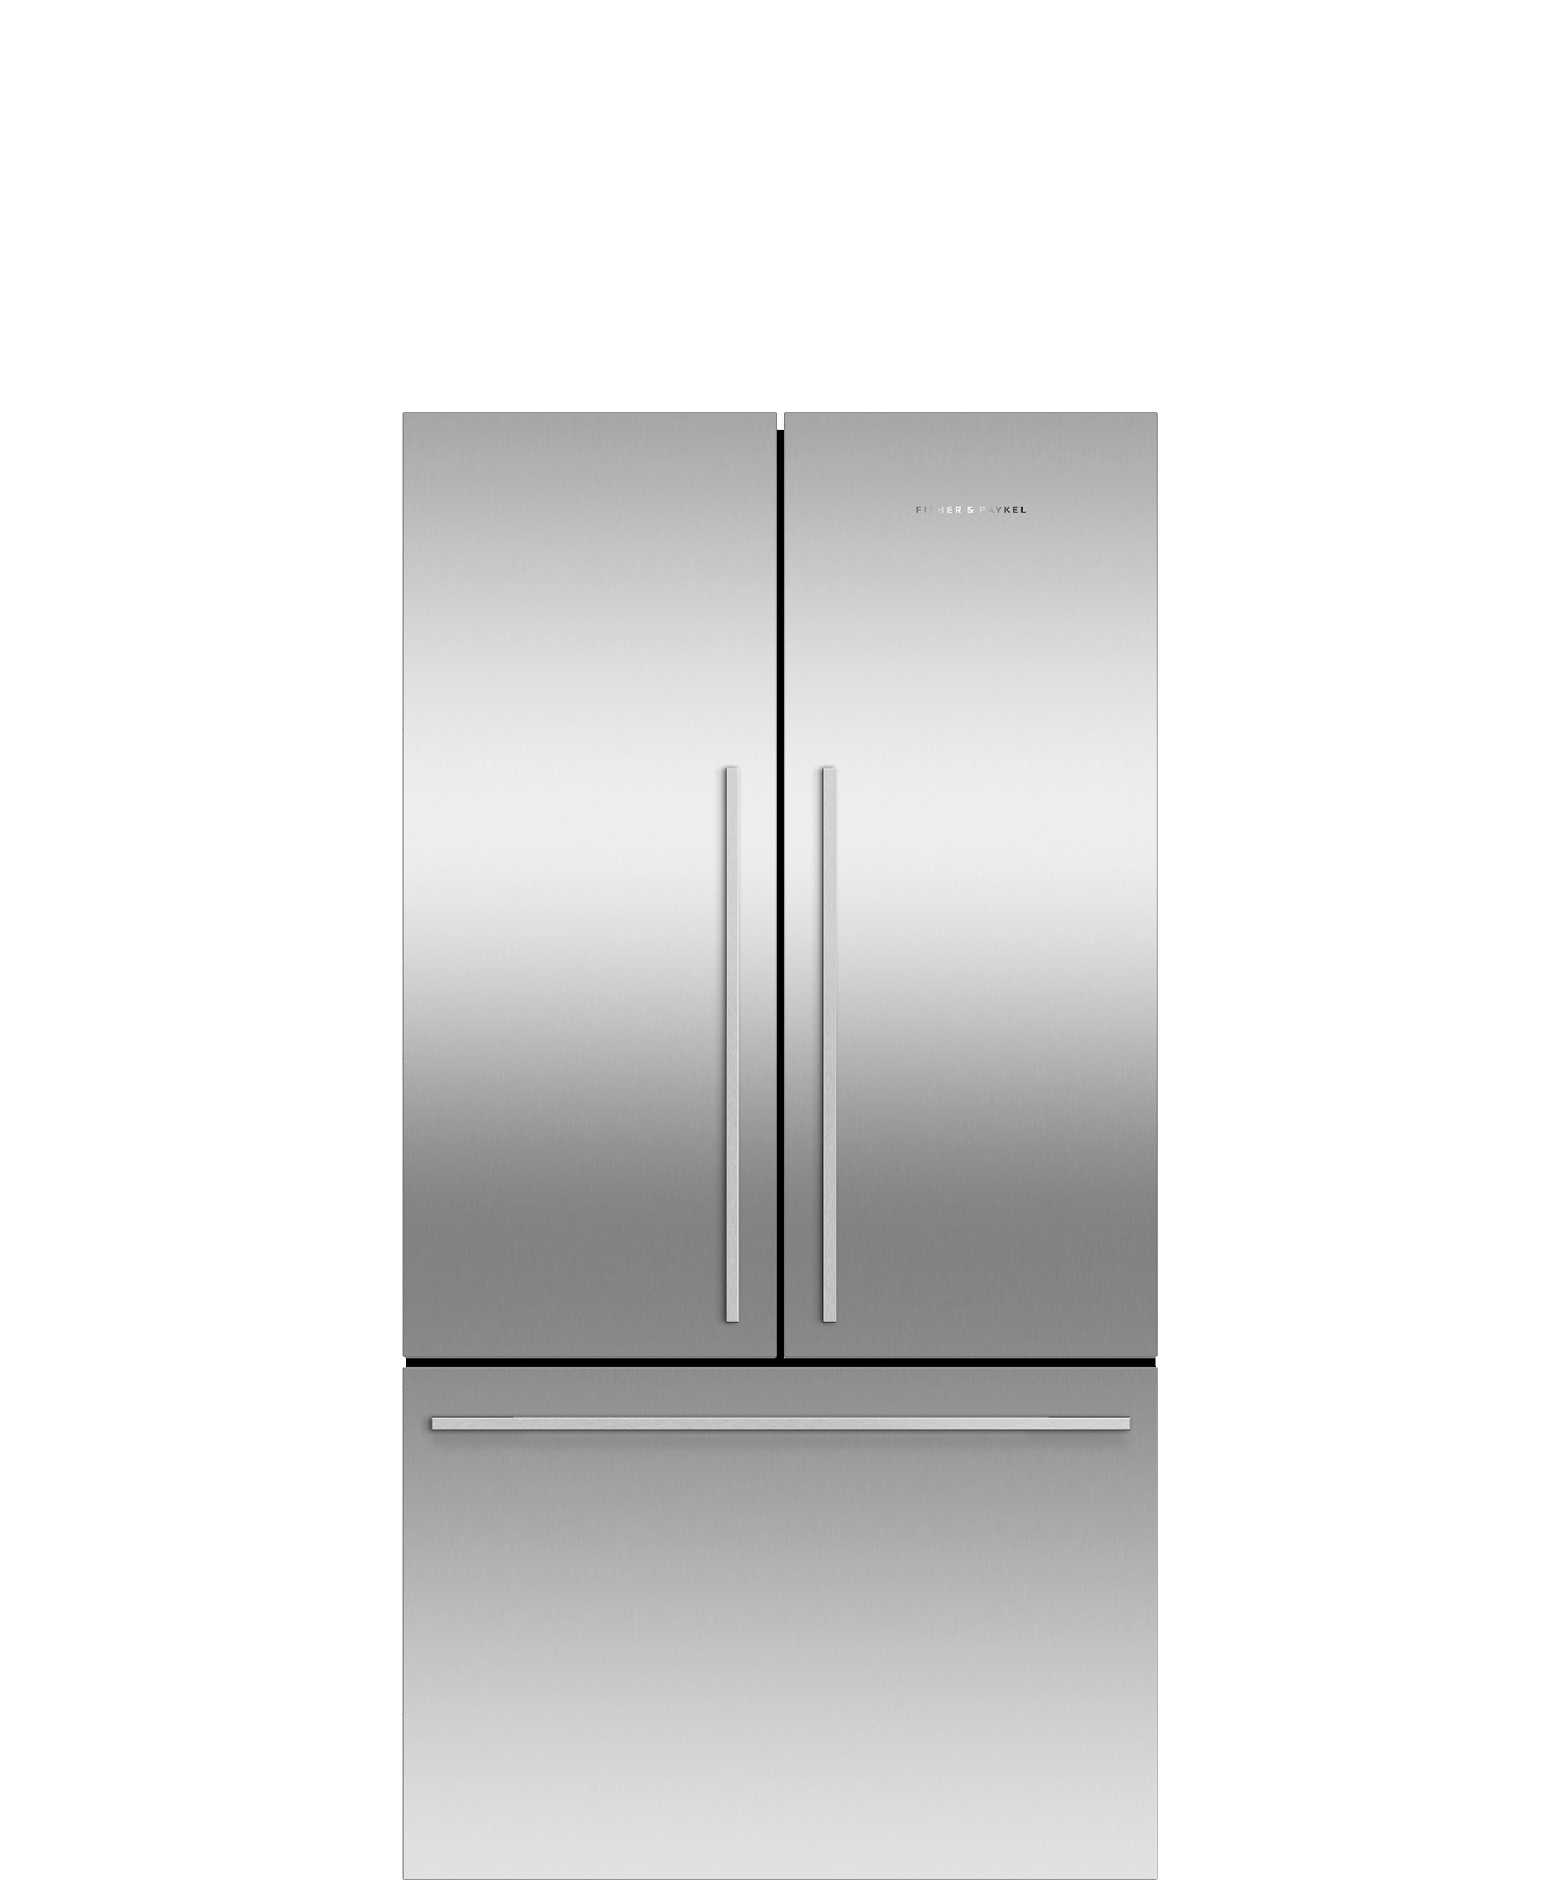 Freestanding French Door Refrigerator Freezer, 90cm, 545L